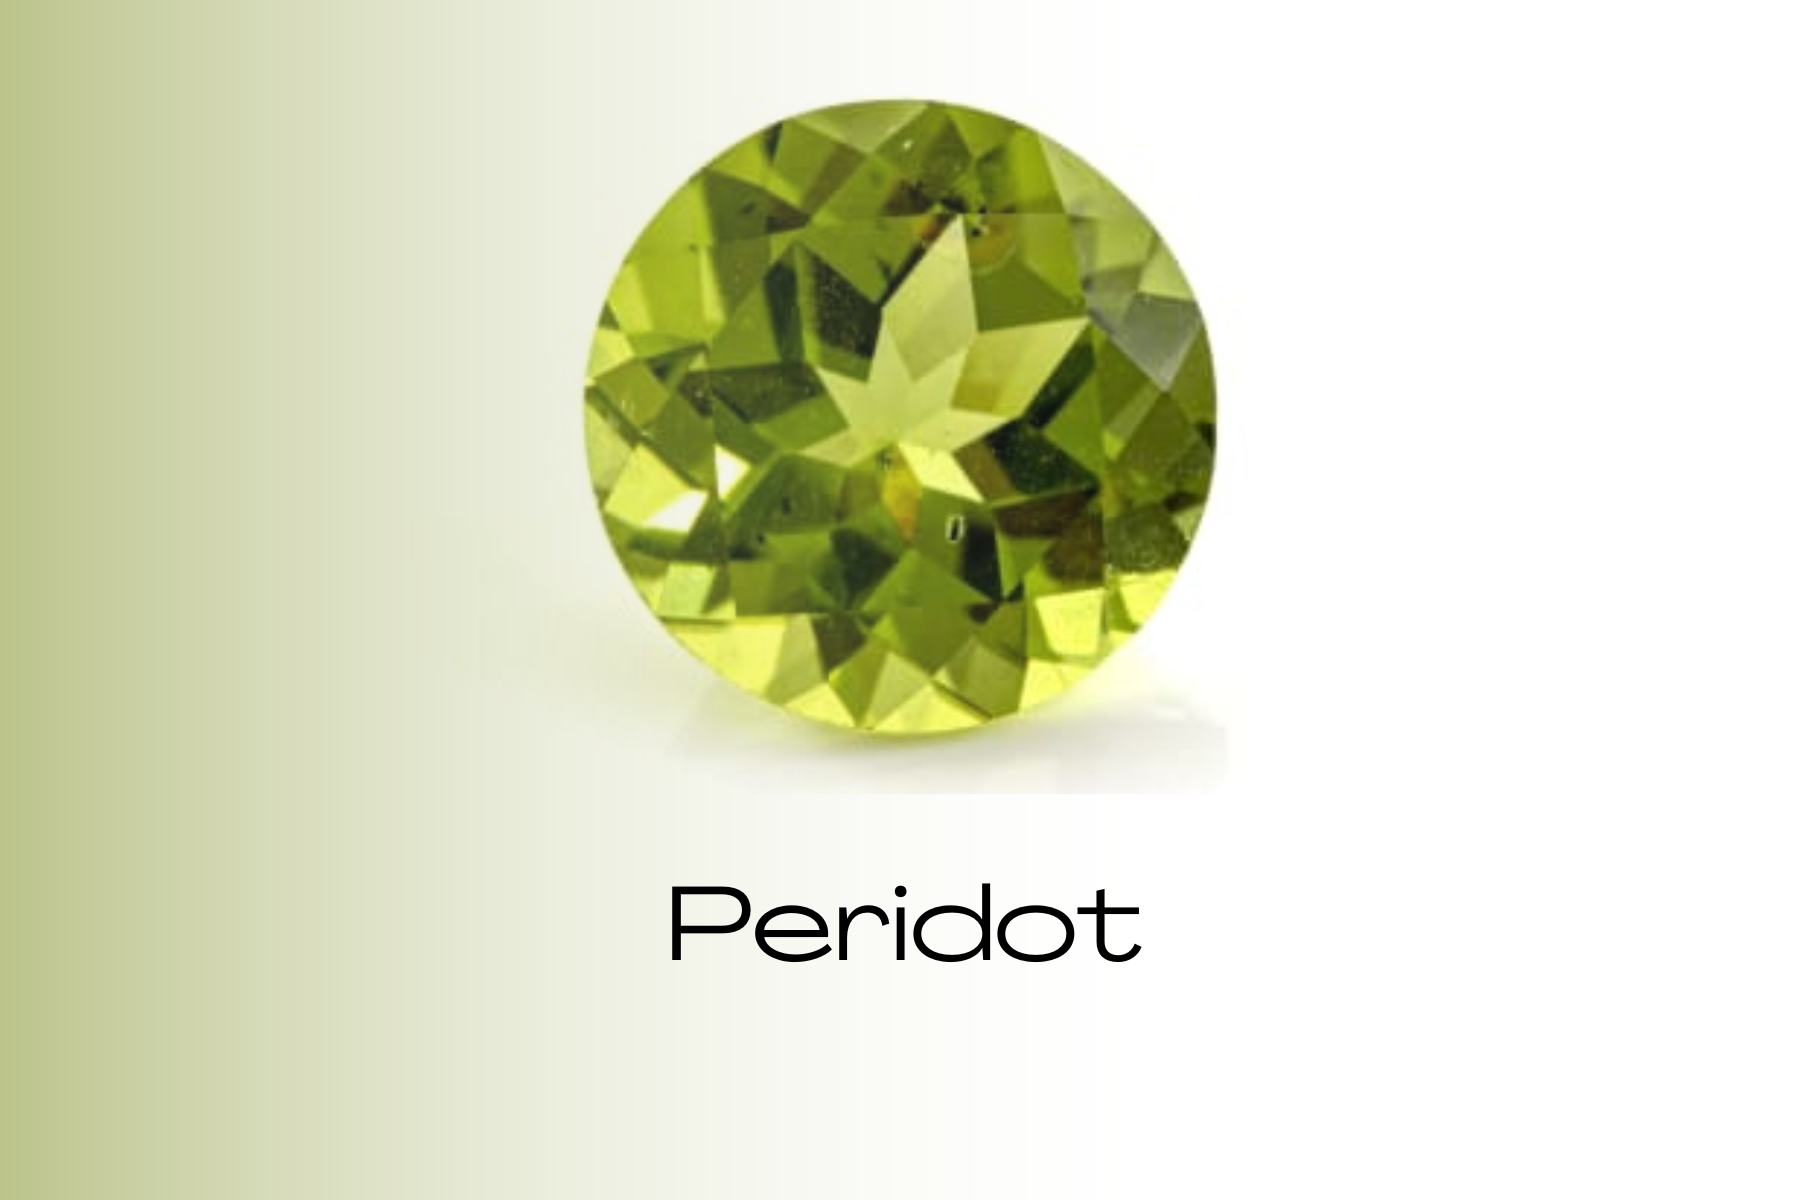 A round green peridot stone